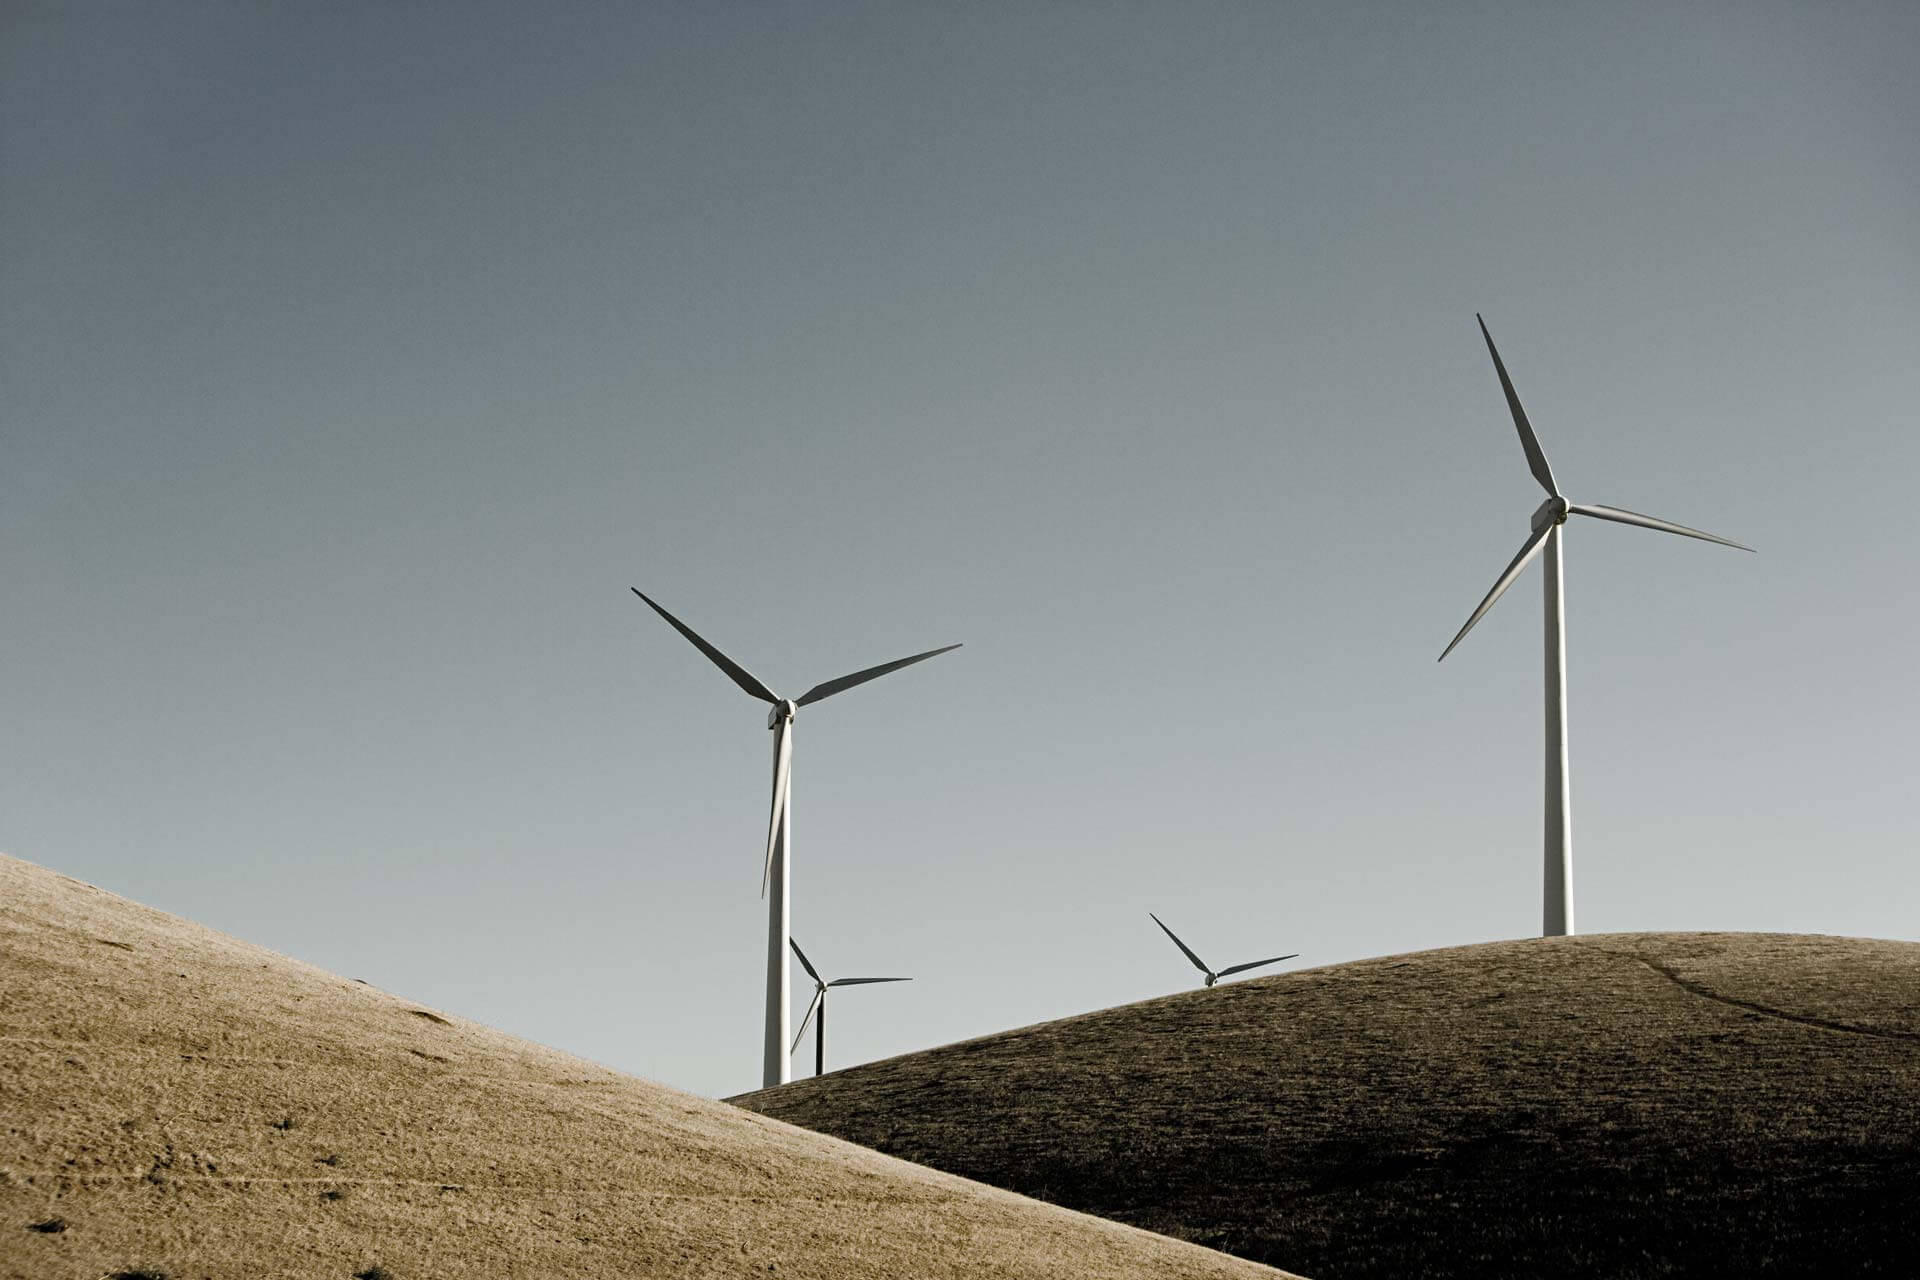 Pozantı Andoz Res 32 Megawatt Rüzgar Enerji Santrali Yapım İşi